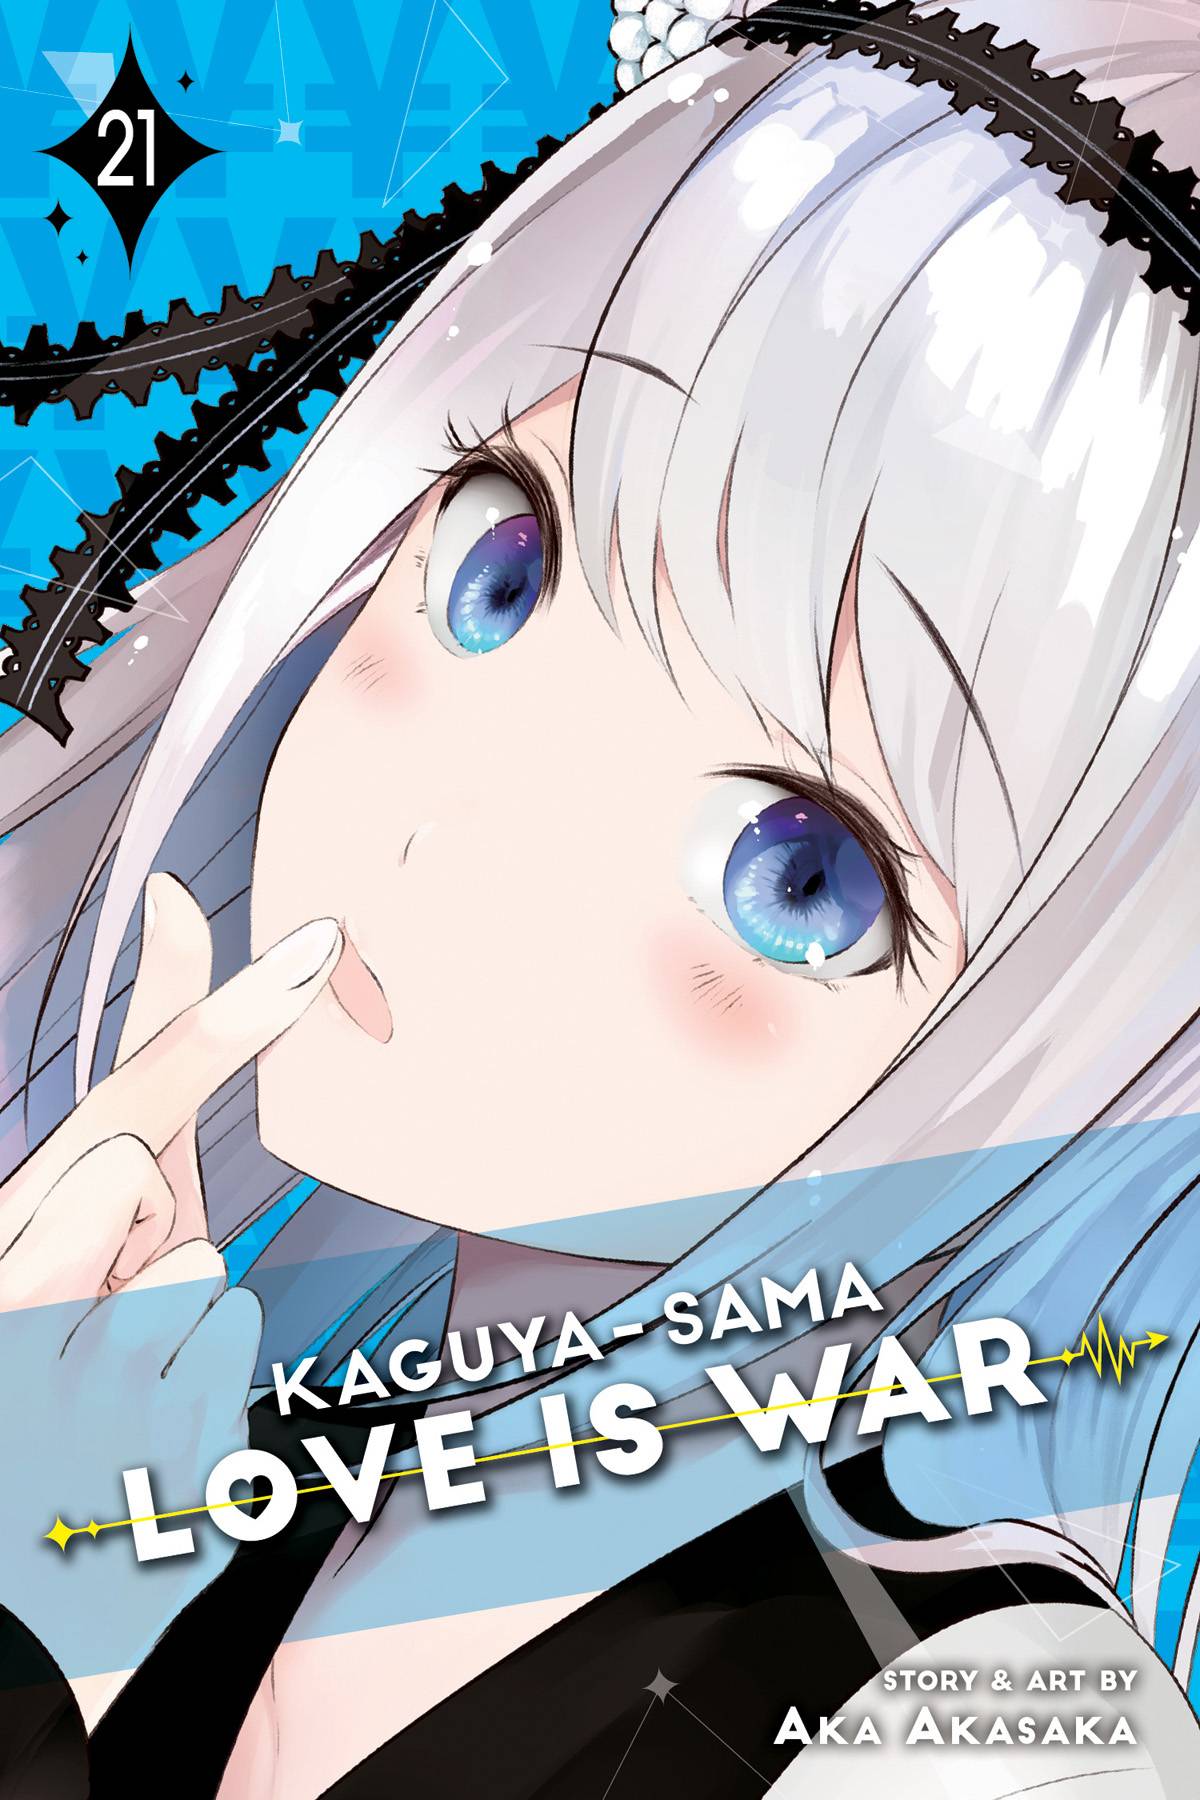 KAGUYA SAMA LOVE IS WAR GN VOL 21